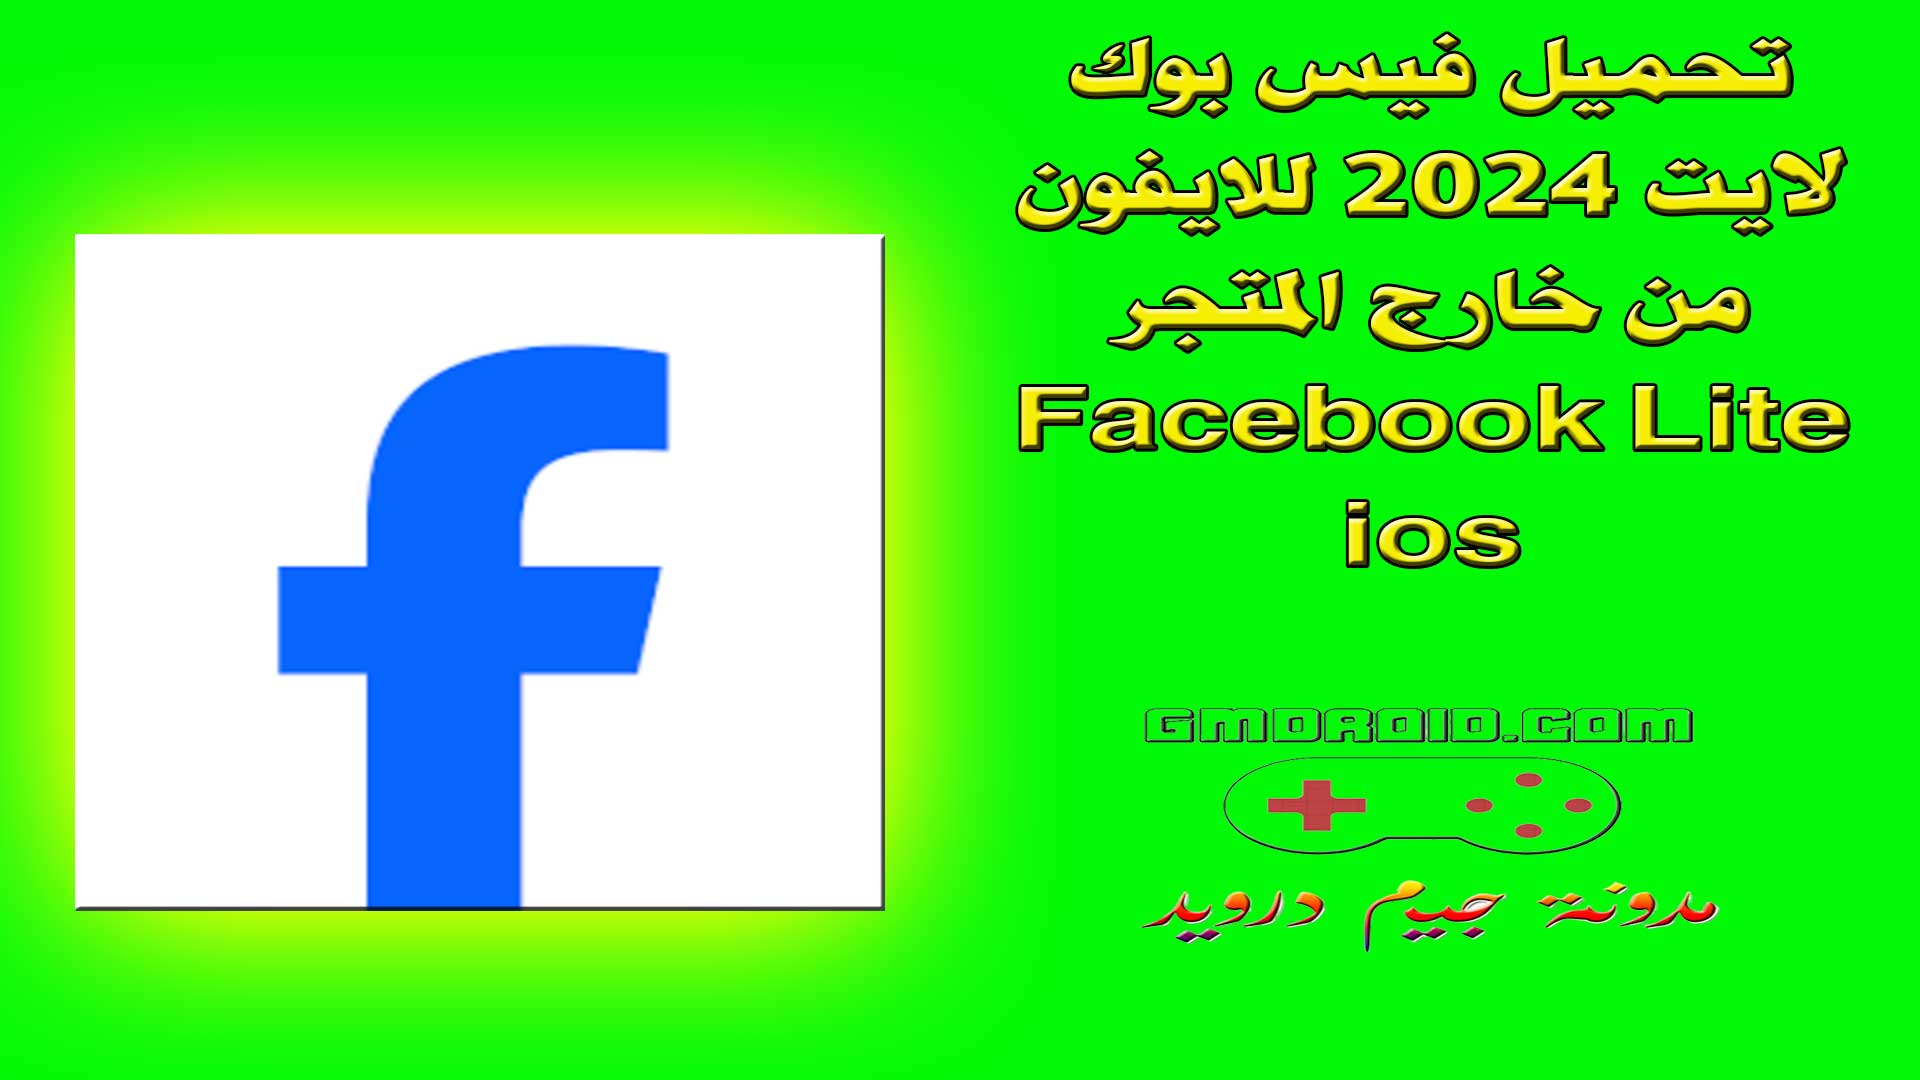 تحميل فيس بوك لايت 2024 للايفون من خارج المتجر - Facebook Lite ios